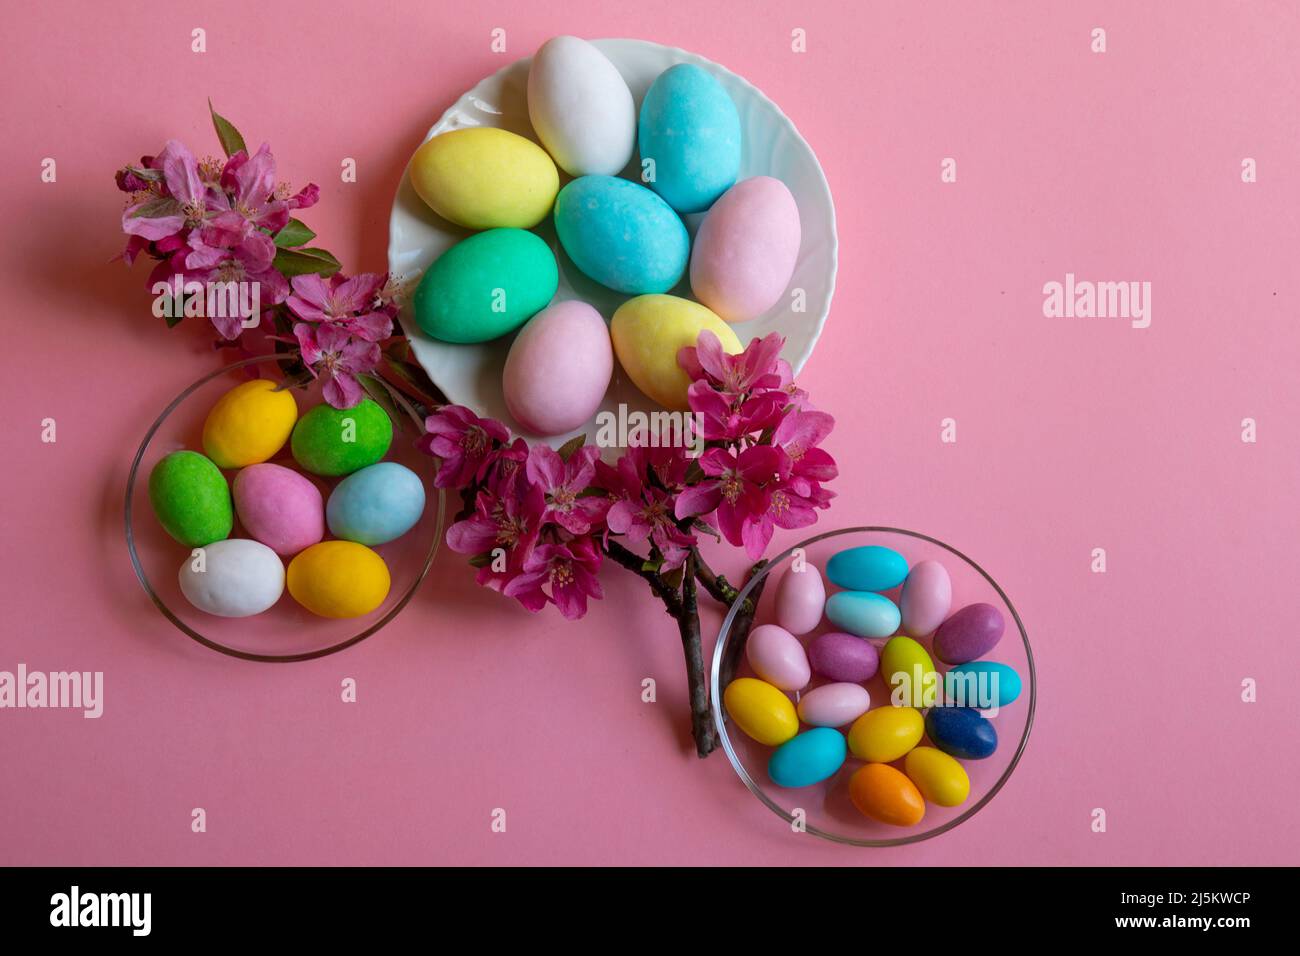 Buona Pasqua! Carta di Pasqua con un'immagine di uova colorate con uova colorate di gallina, piccione e quaglia decorate con fiori su sfondo rosa Foto Stock